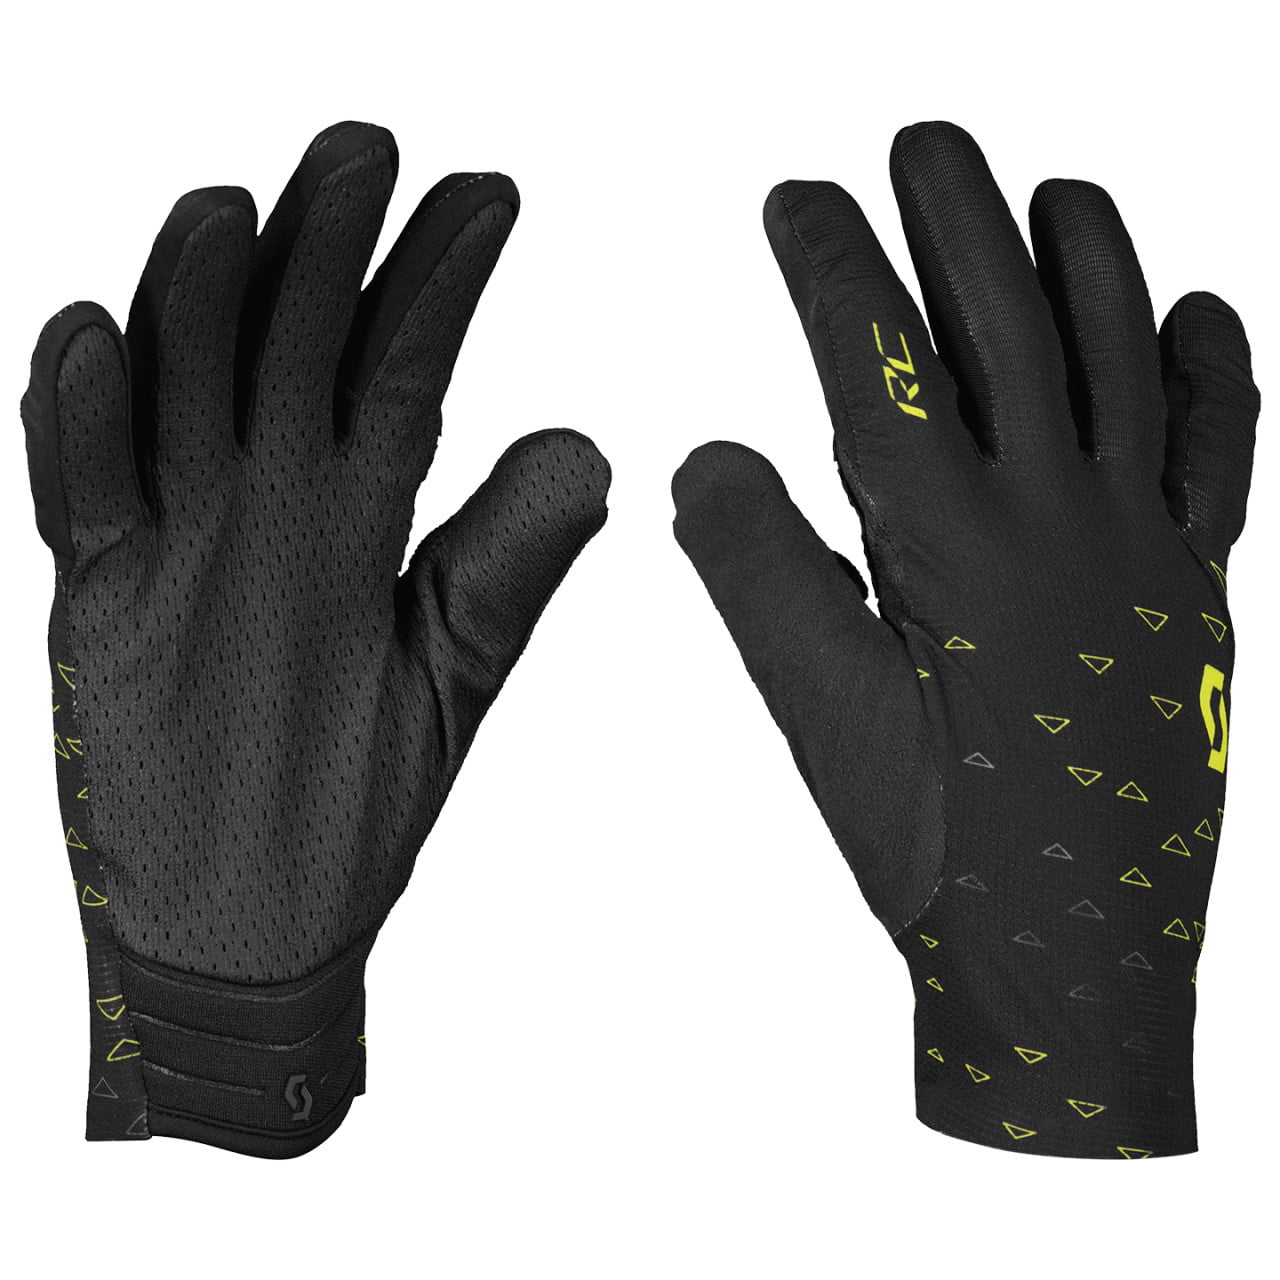 RC Pro Full Finger Gloves